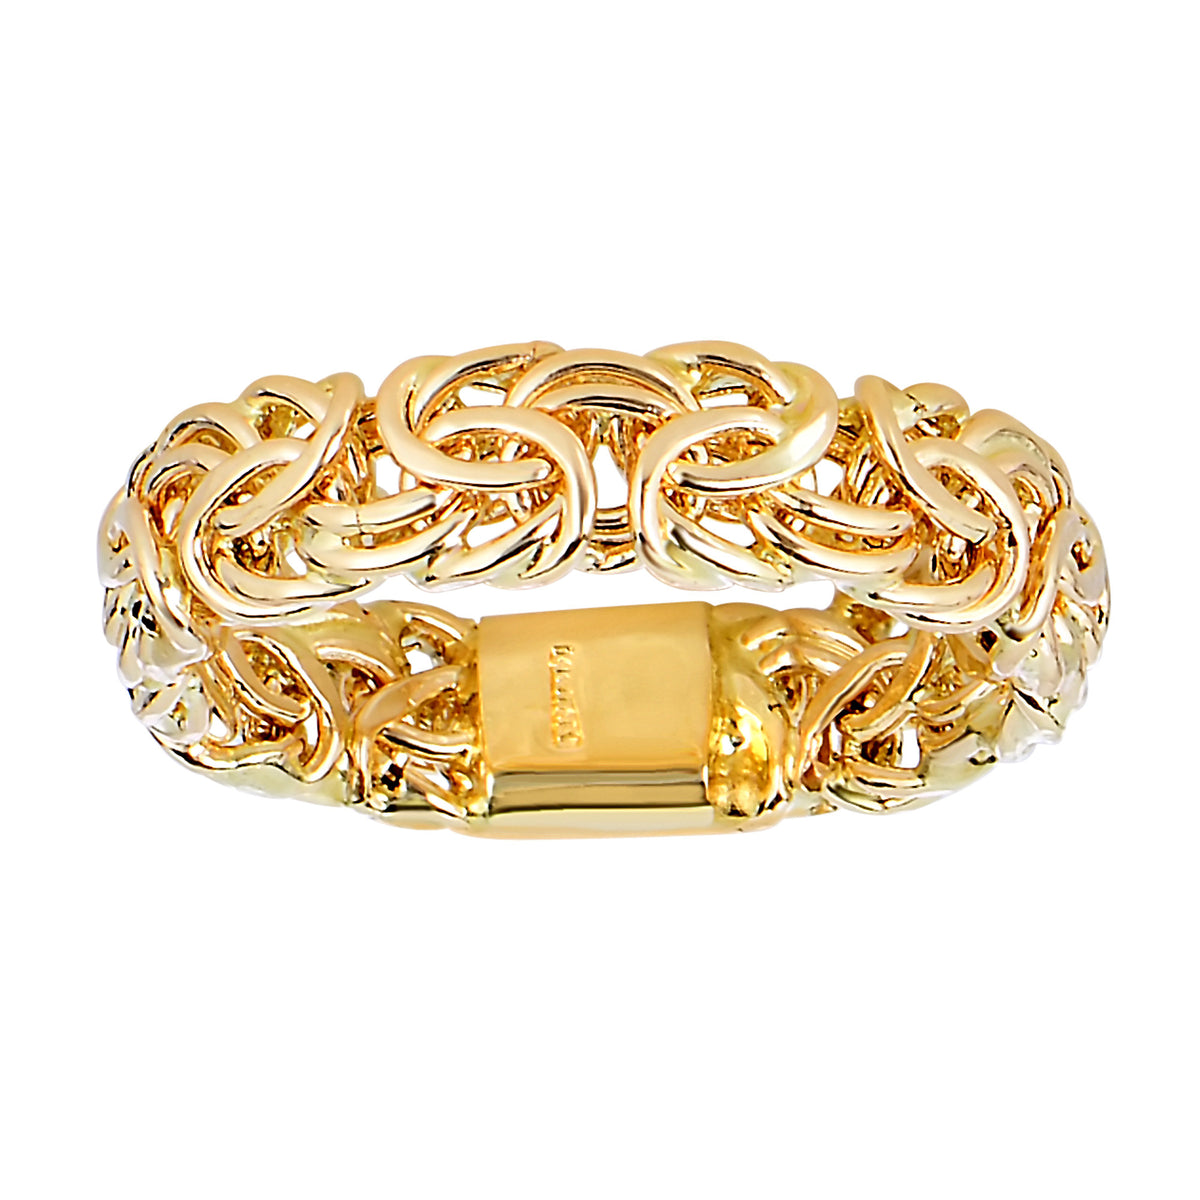 14Kt Yellow Gold Byzantine Style Band - 6mm Wide - JewelryAffairs
 - 1